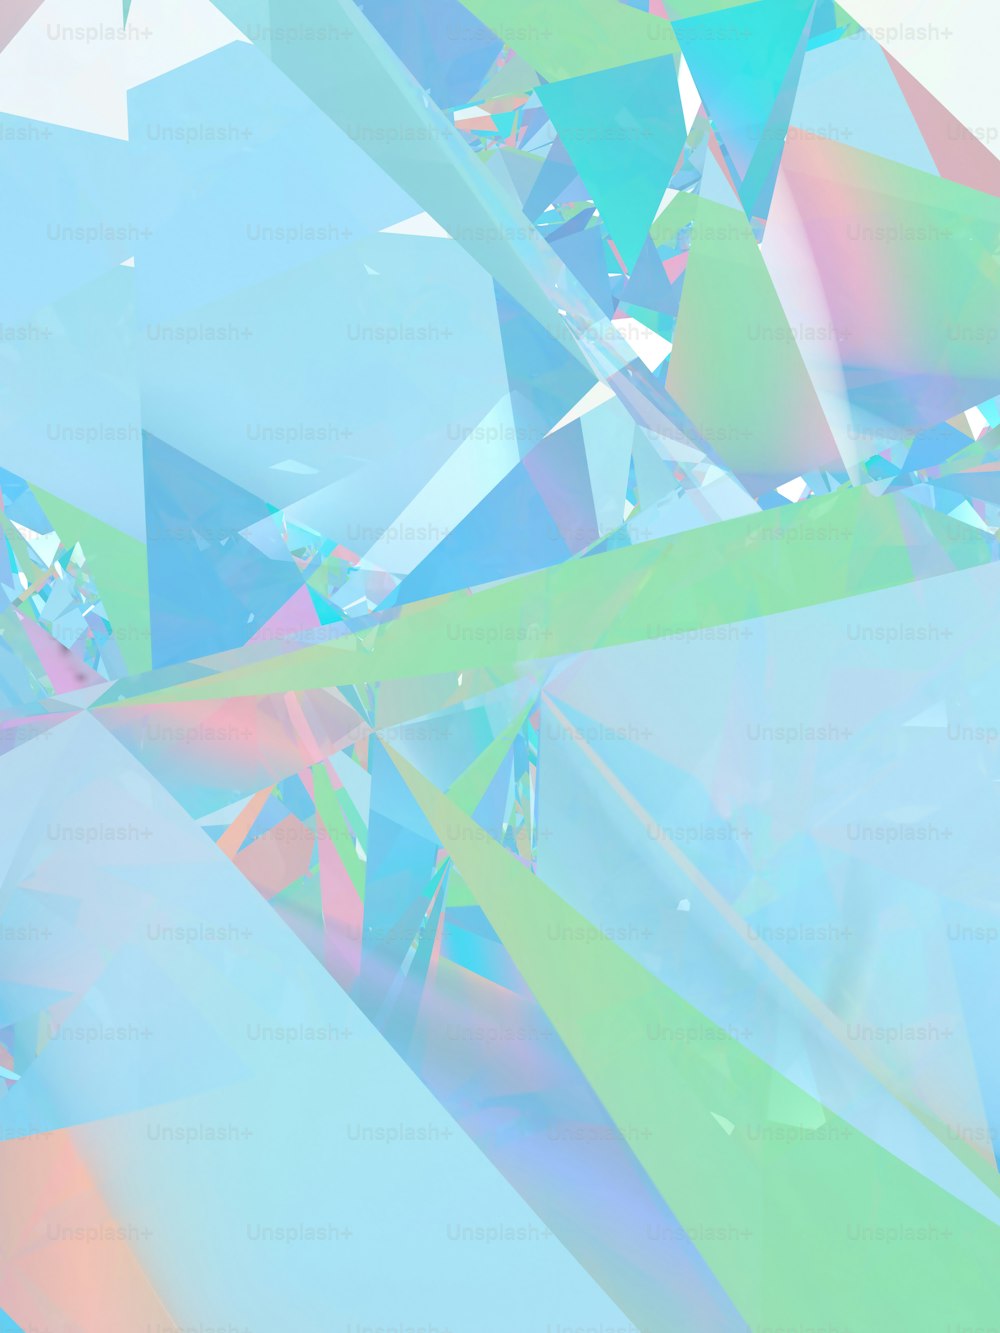 다이아몬드와 같은 물체의 여러 가지 빛깔의 이미지